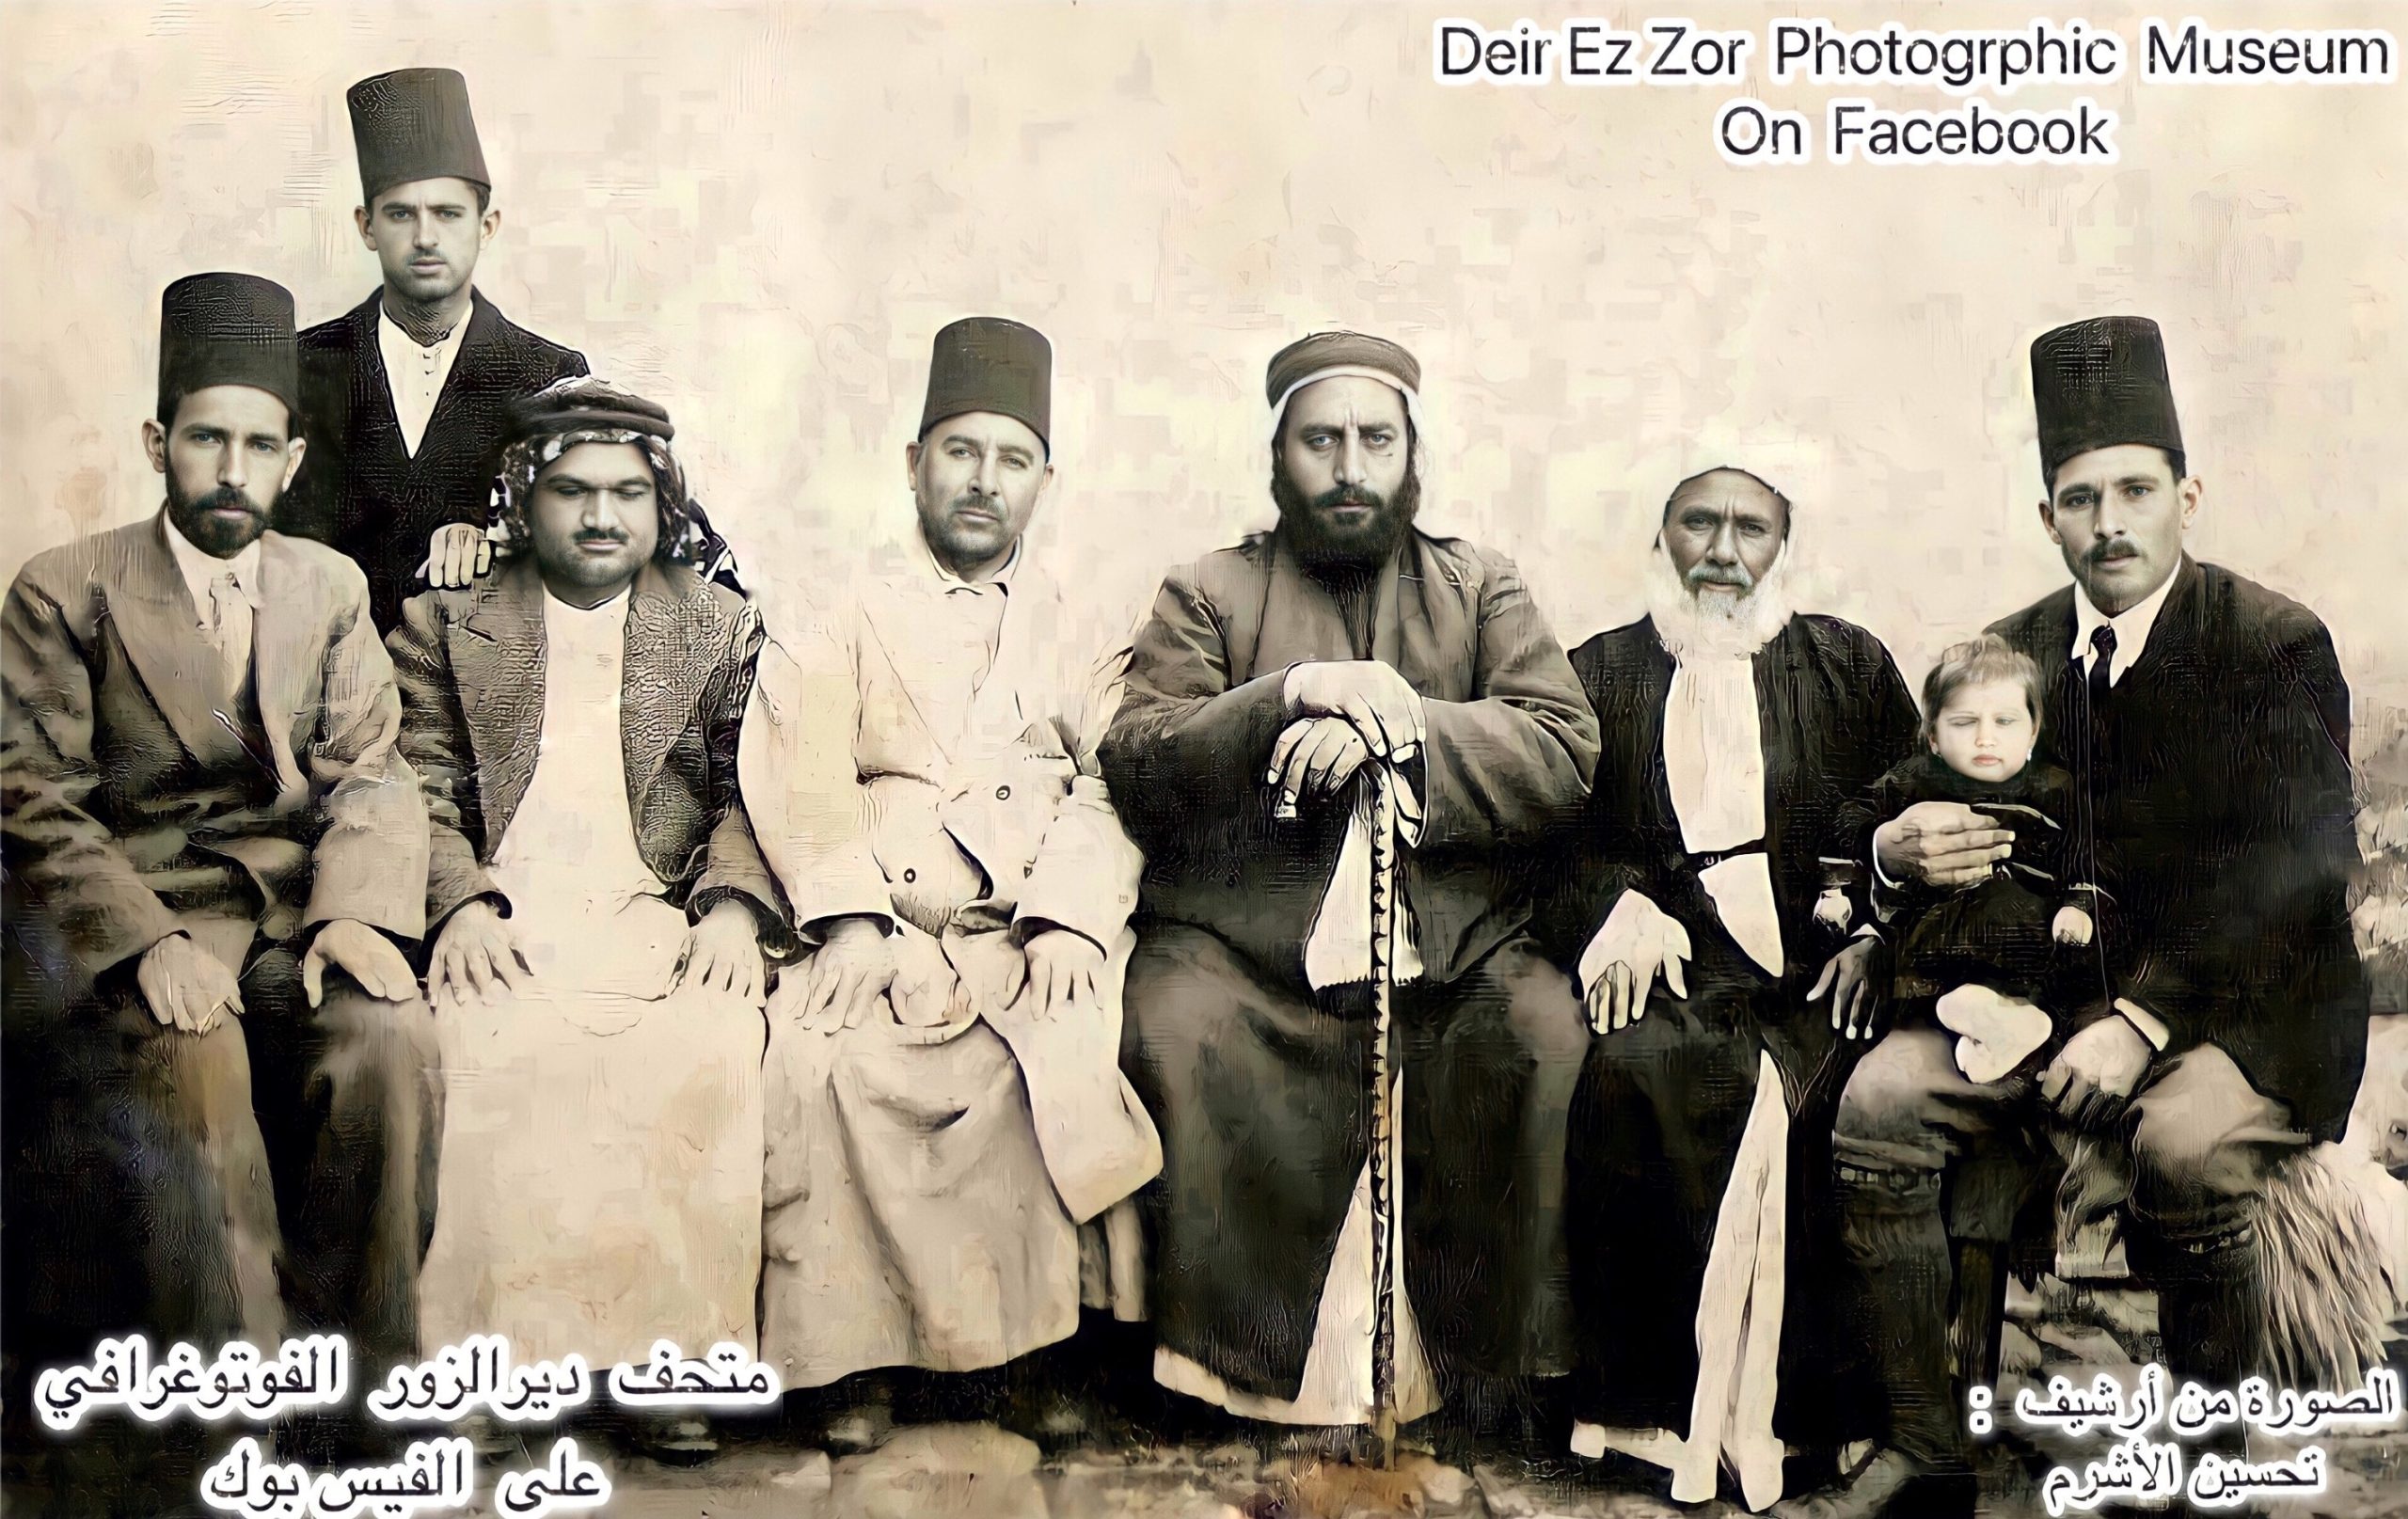 التاريخ السوري المعاصر - سيد شريف الراوي وشخصيات من ديرالزور عام 1933